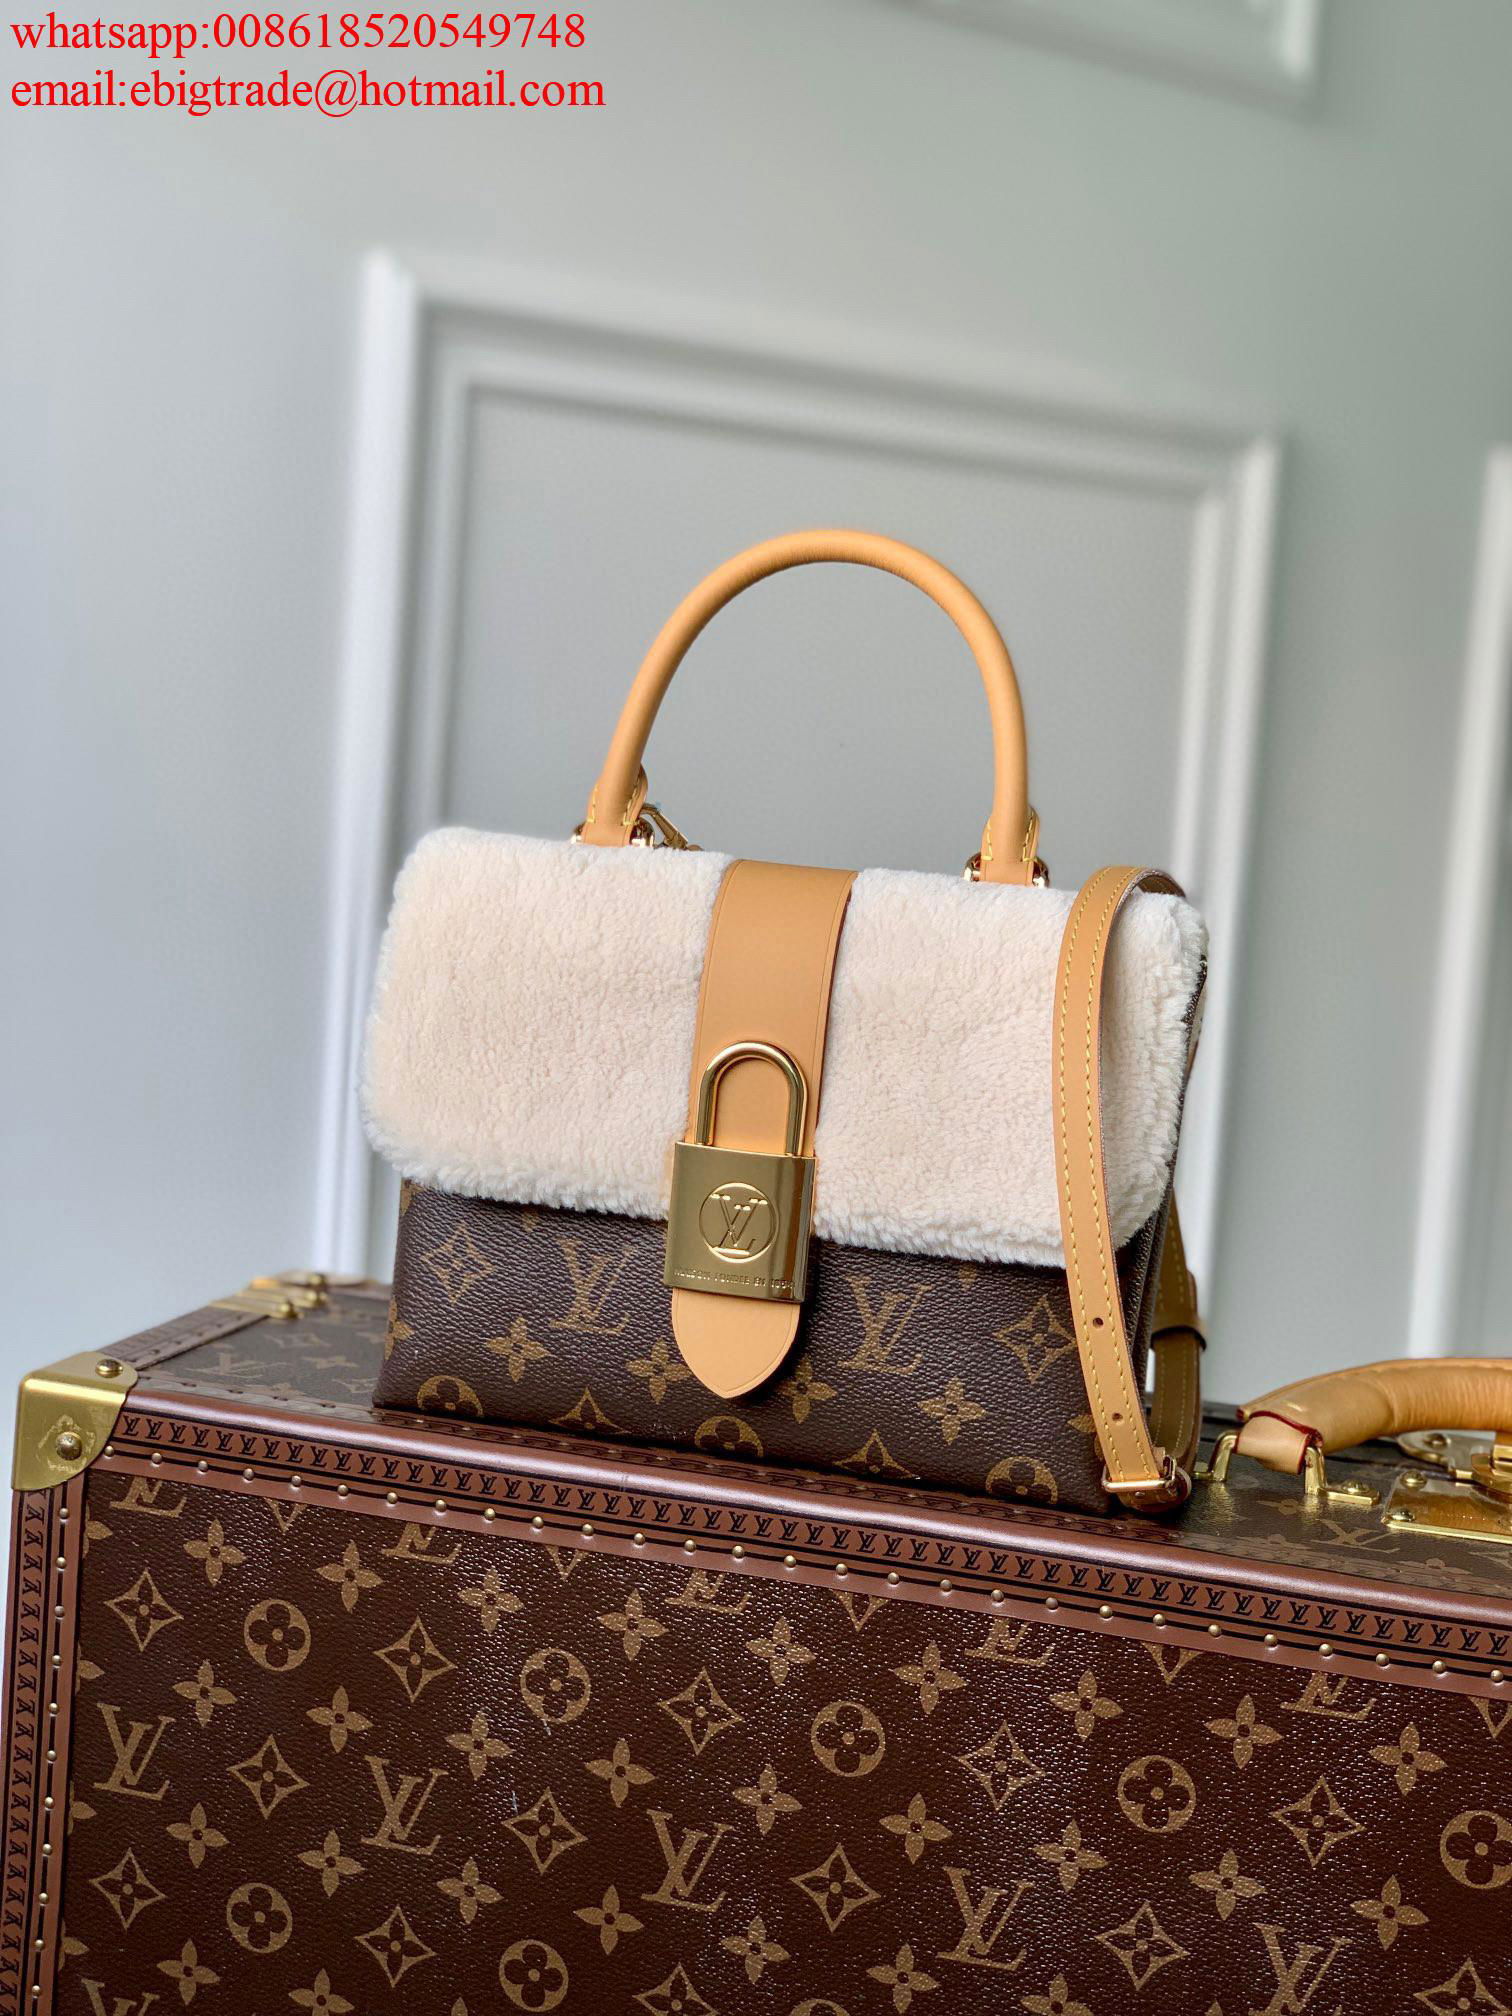 Cheap Louis Vuitton bags